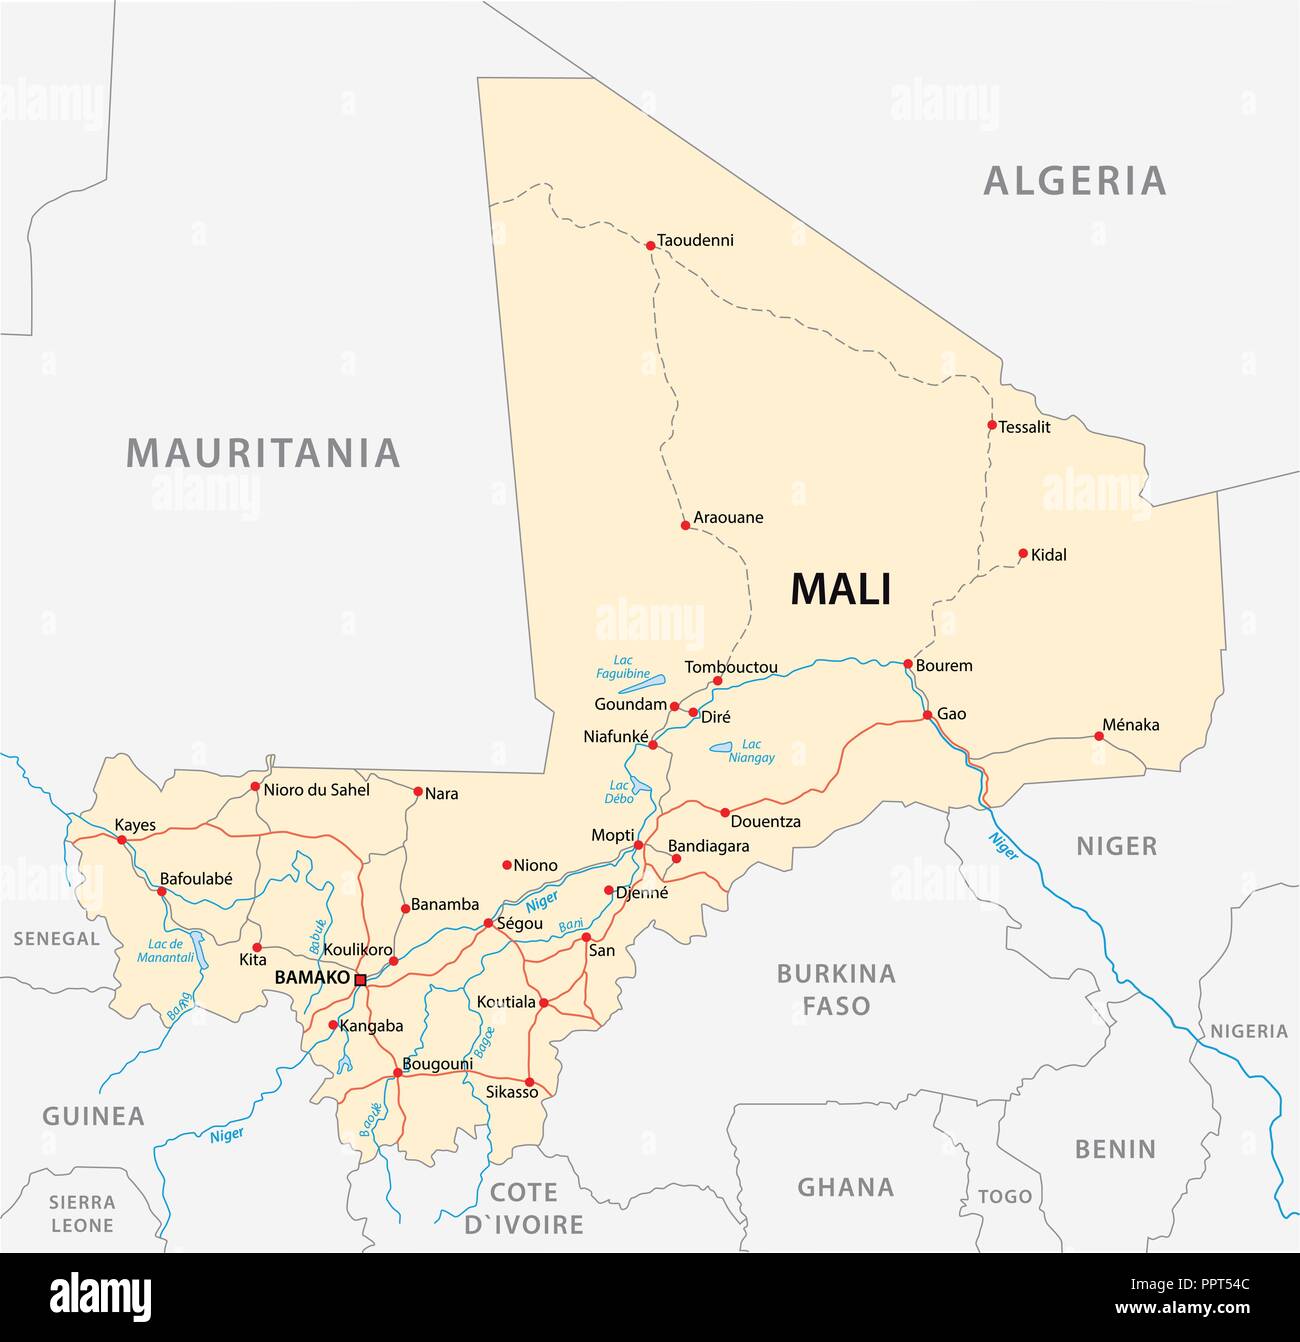 Vektor Karte der Republik Mali. Stock Vektor